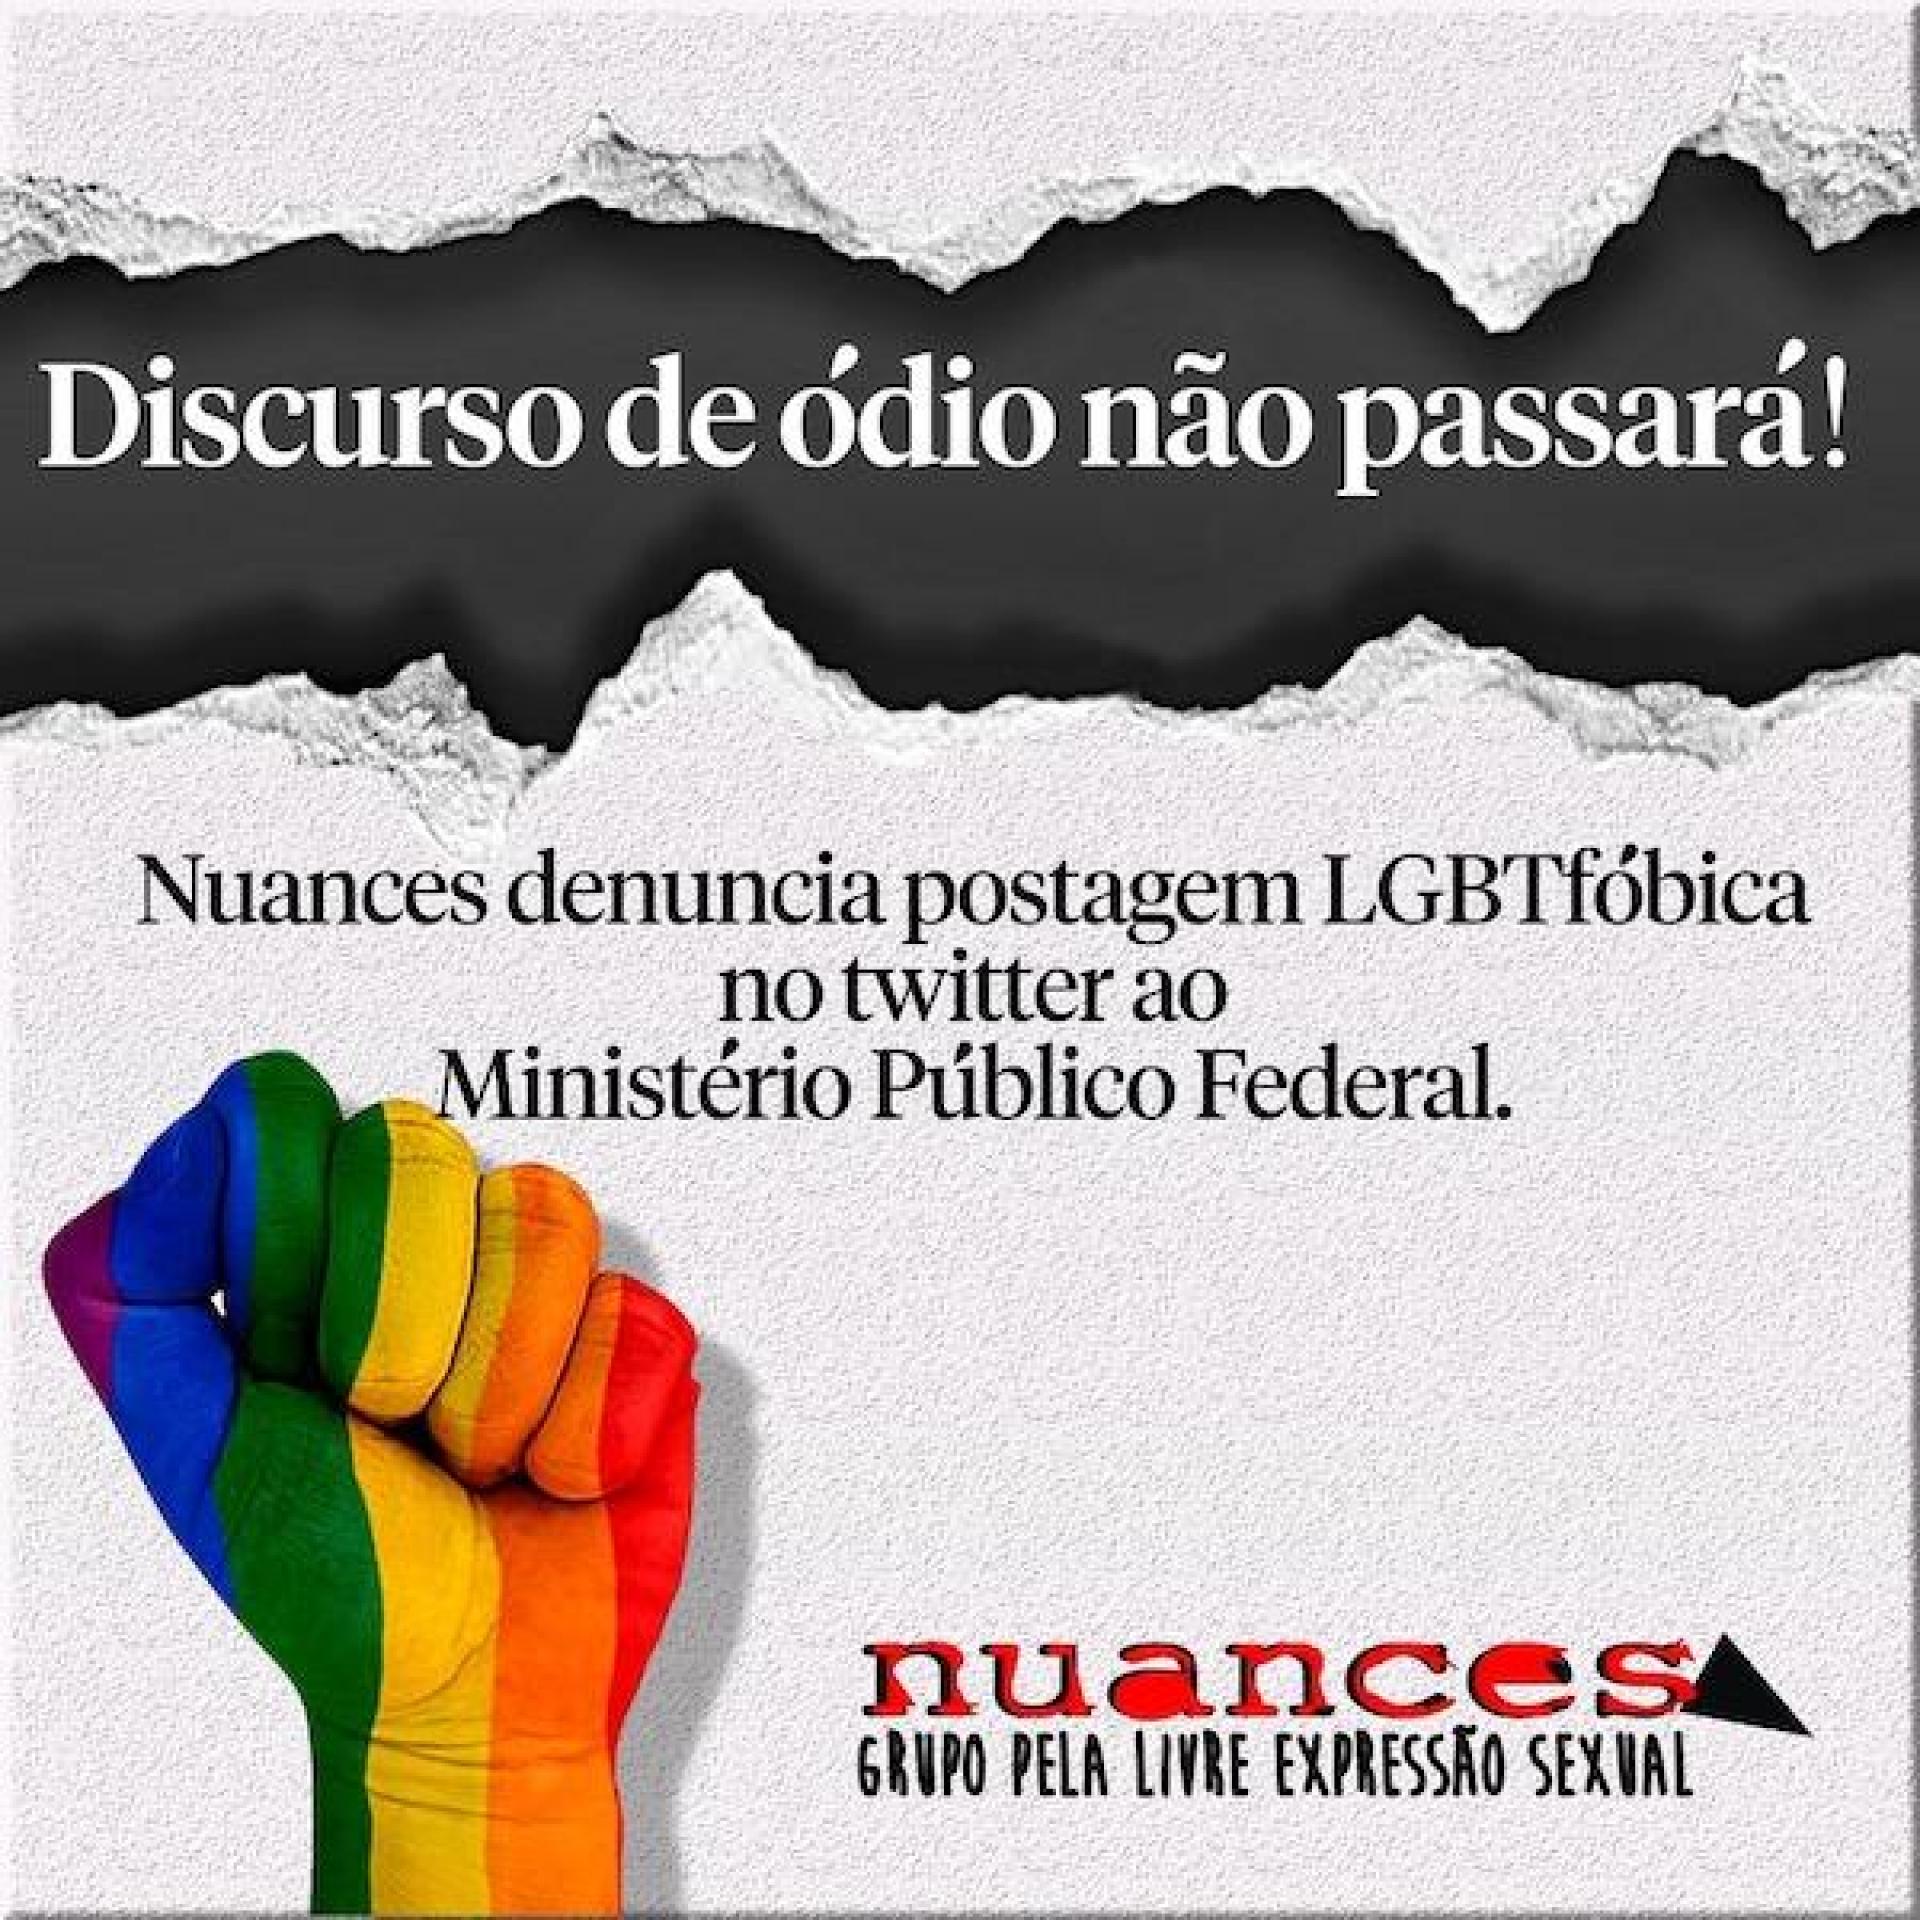 Nuances denuncia perfil homofóbico ao MPF